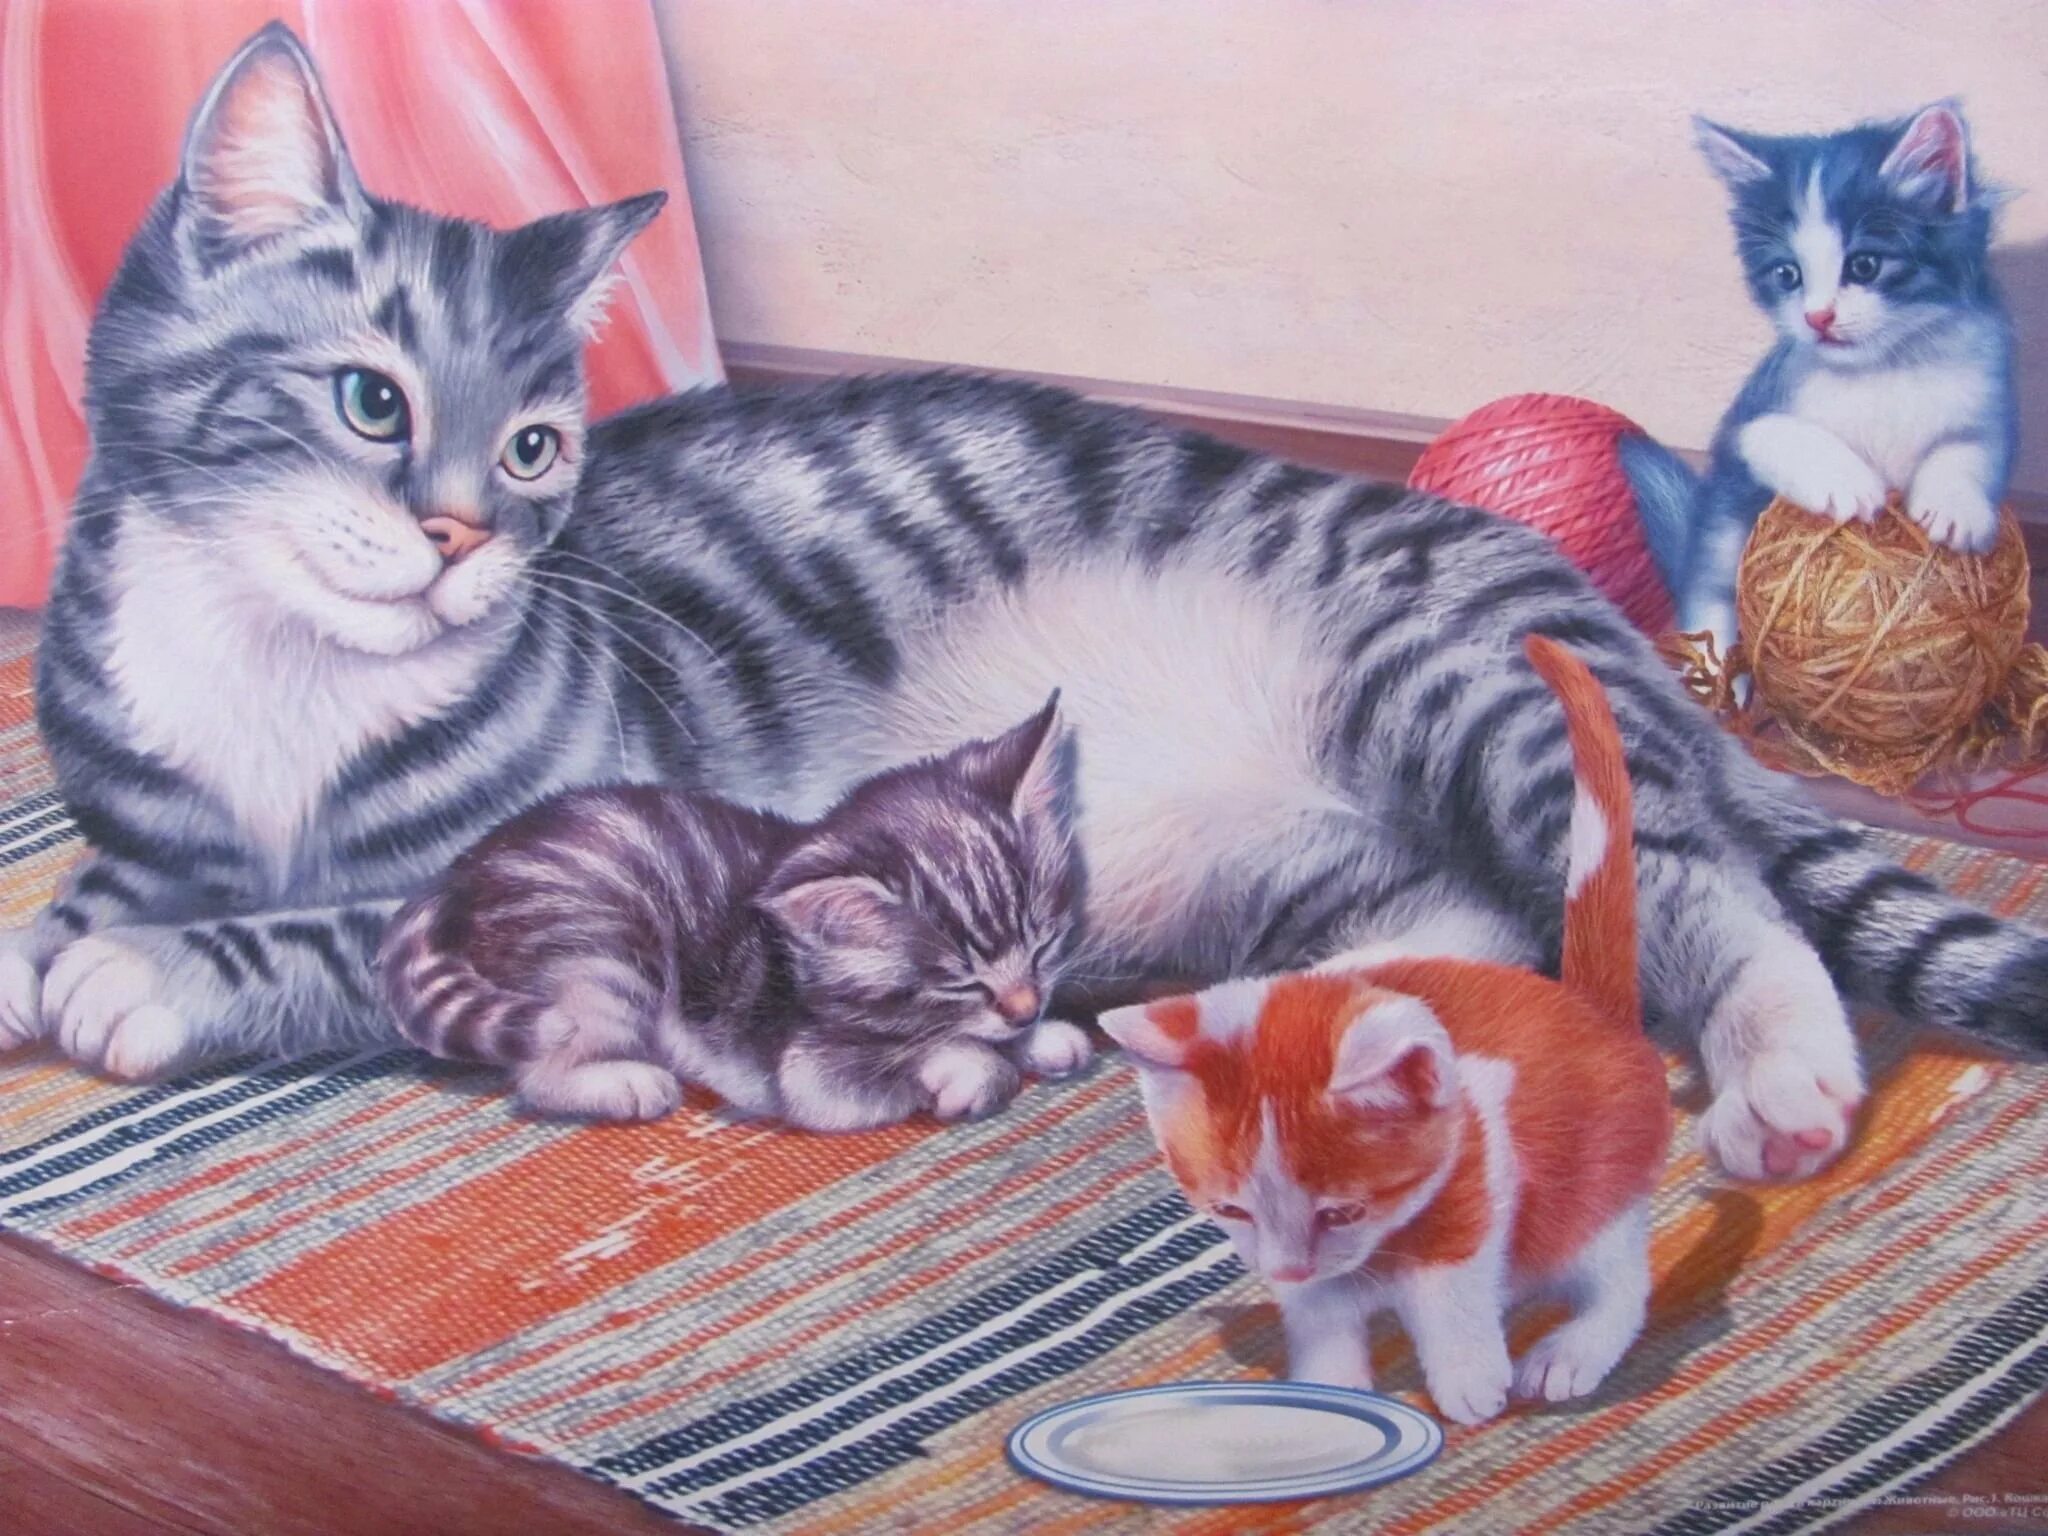 Котята зовут маму кошку слушать. Картина кошка с котятами Автор с Веретенникова. Кошка и котенок для детей. Картина для детей кошка с котятами. Сюжетная картина кошка с котятами.